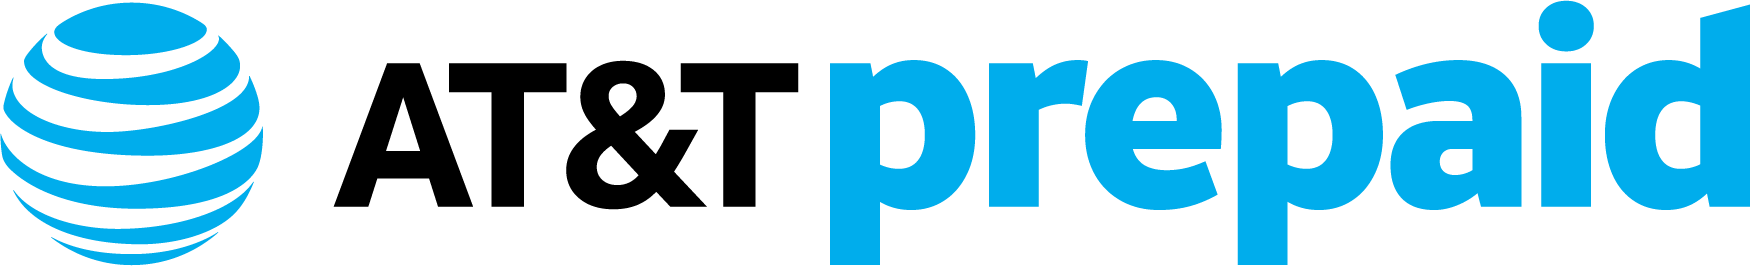 AT&T PREPAID logo